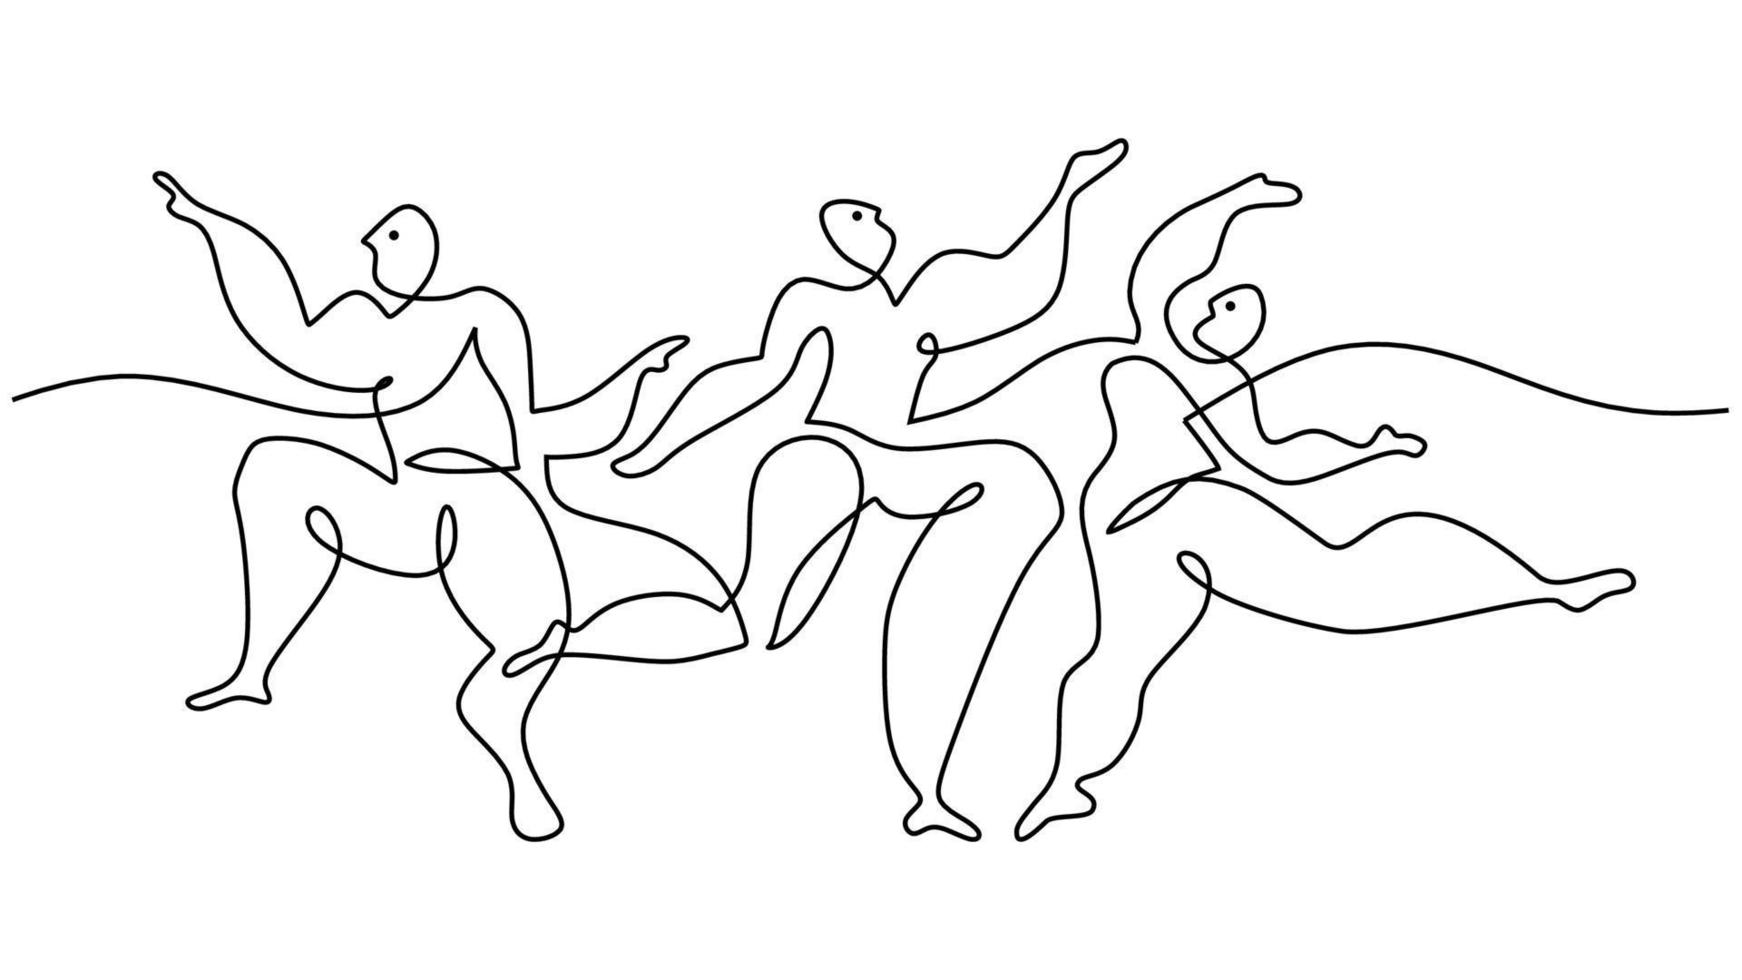 uno continuo singolo linea disegno di danza persone picasso. vettore